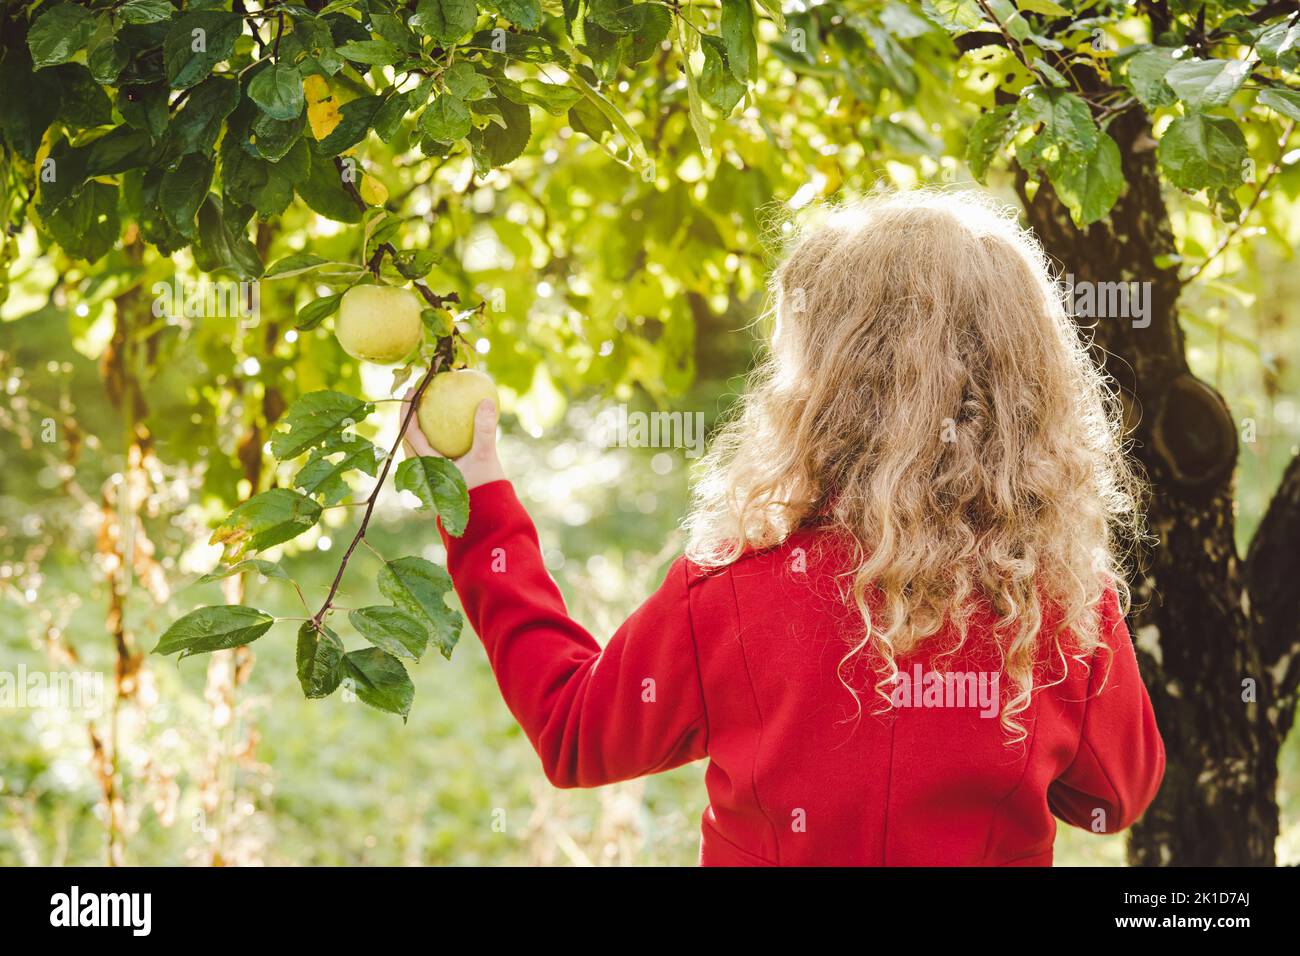 Vue arrière de la jeune fille de 8 ans cueillant la pomme verte de l'arbre le jour ensoleillé de l'automne. Porter une couche rouge. Concept de nourriture biologique fraîche. Banque D'Images